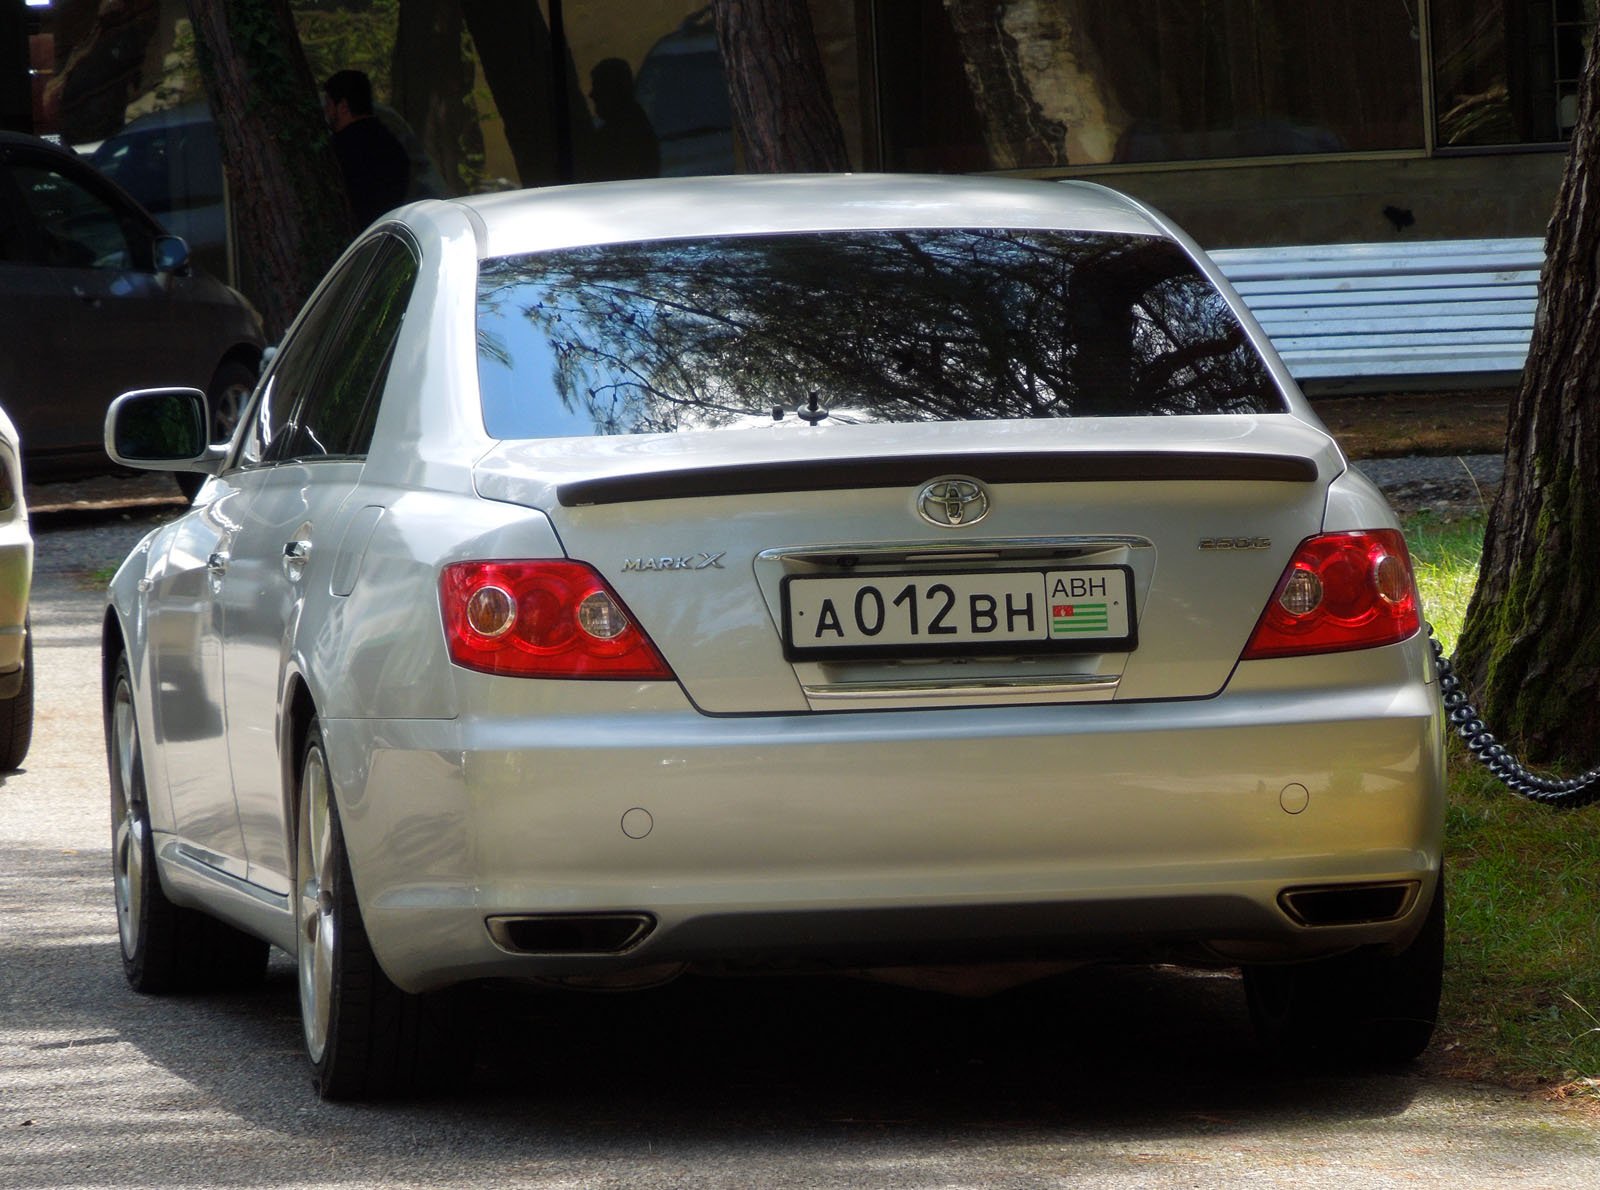 Как ездить на абхазских номерах. Номера Абхазии автомобильные. Автономера Абхазии. Гос номера Абхазии. Абхазские номера на авто.